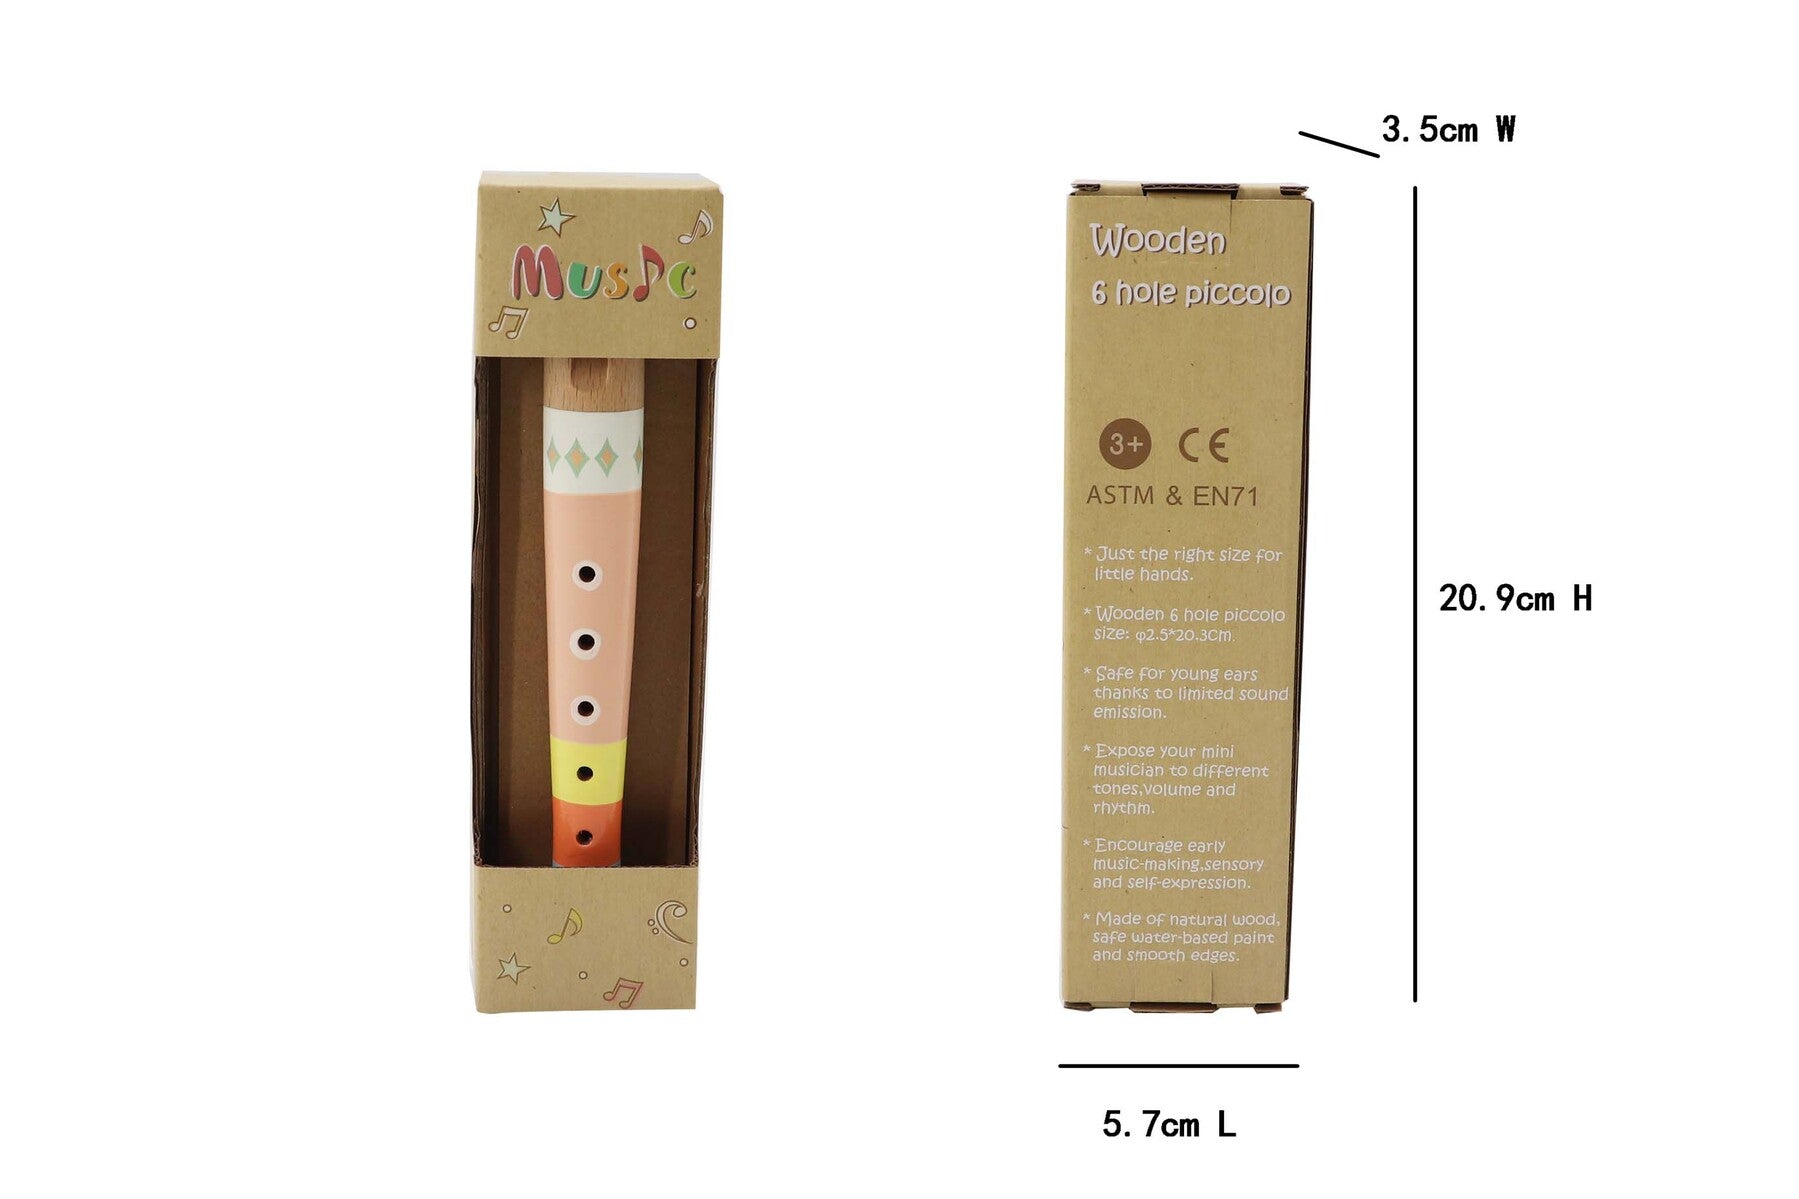 Measurements of Orange Wooden Recorder